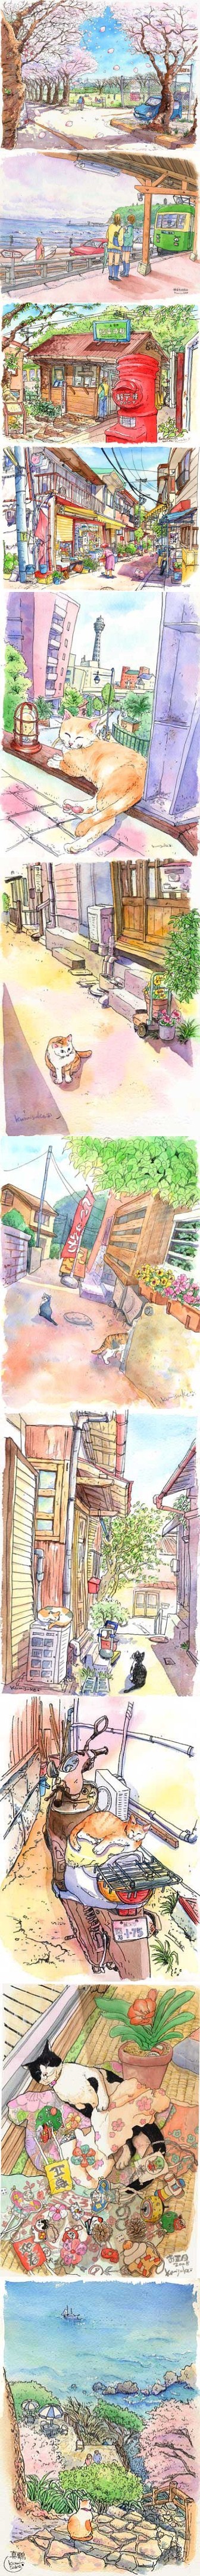 『助久美子的水彩世界』 猫の午后阳光.（网站：http://t.cn/zOhW5Ha）